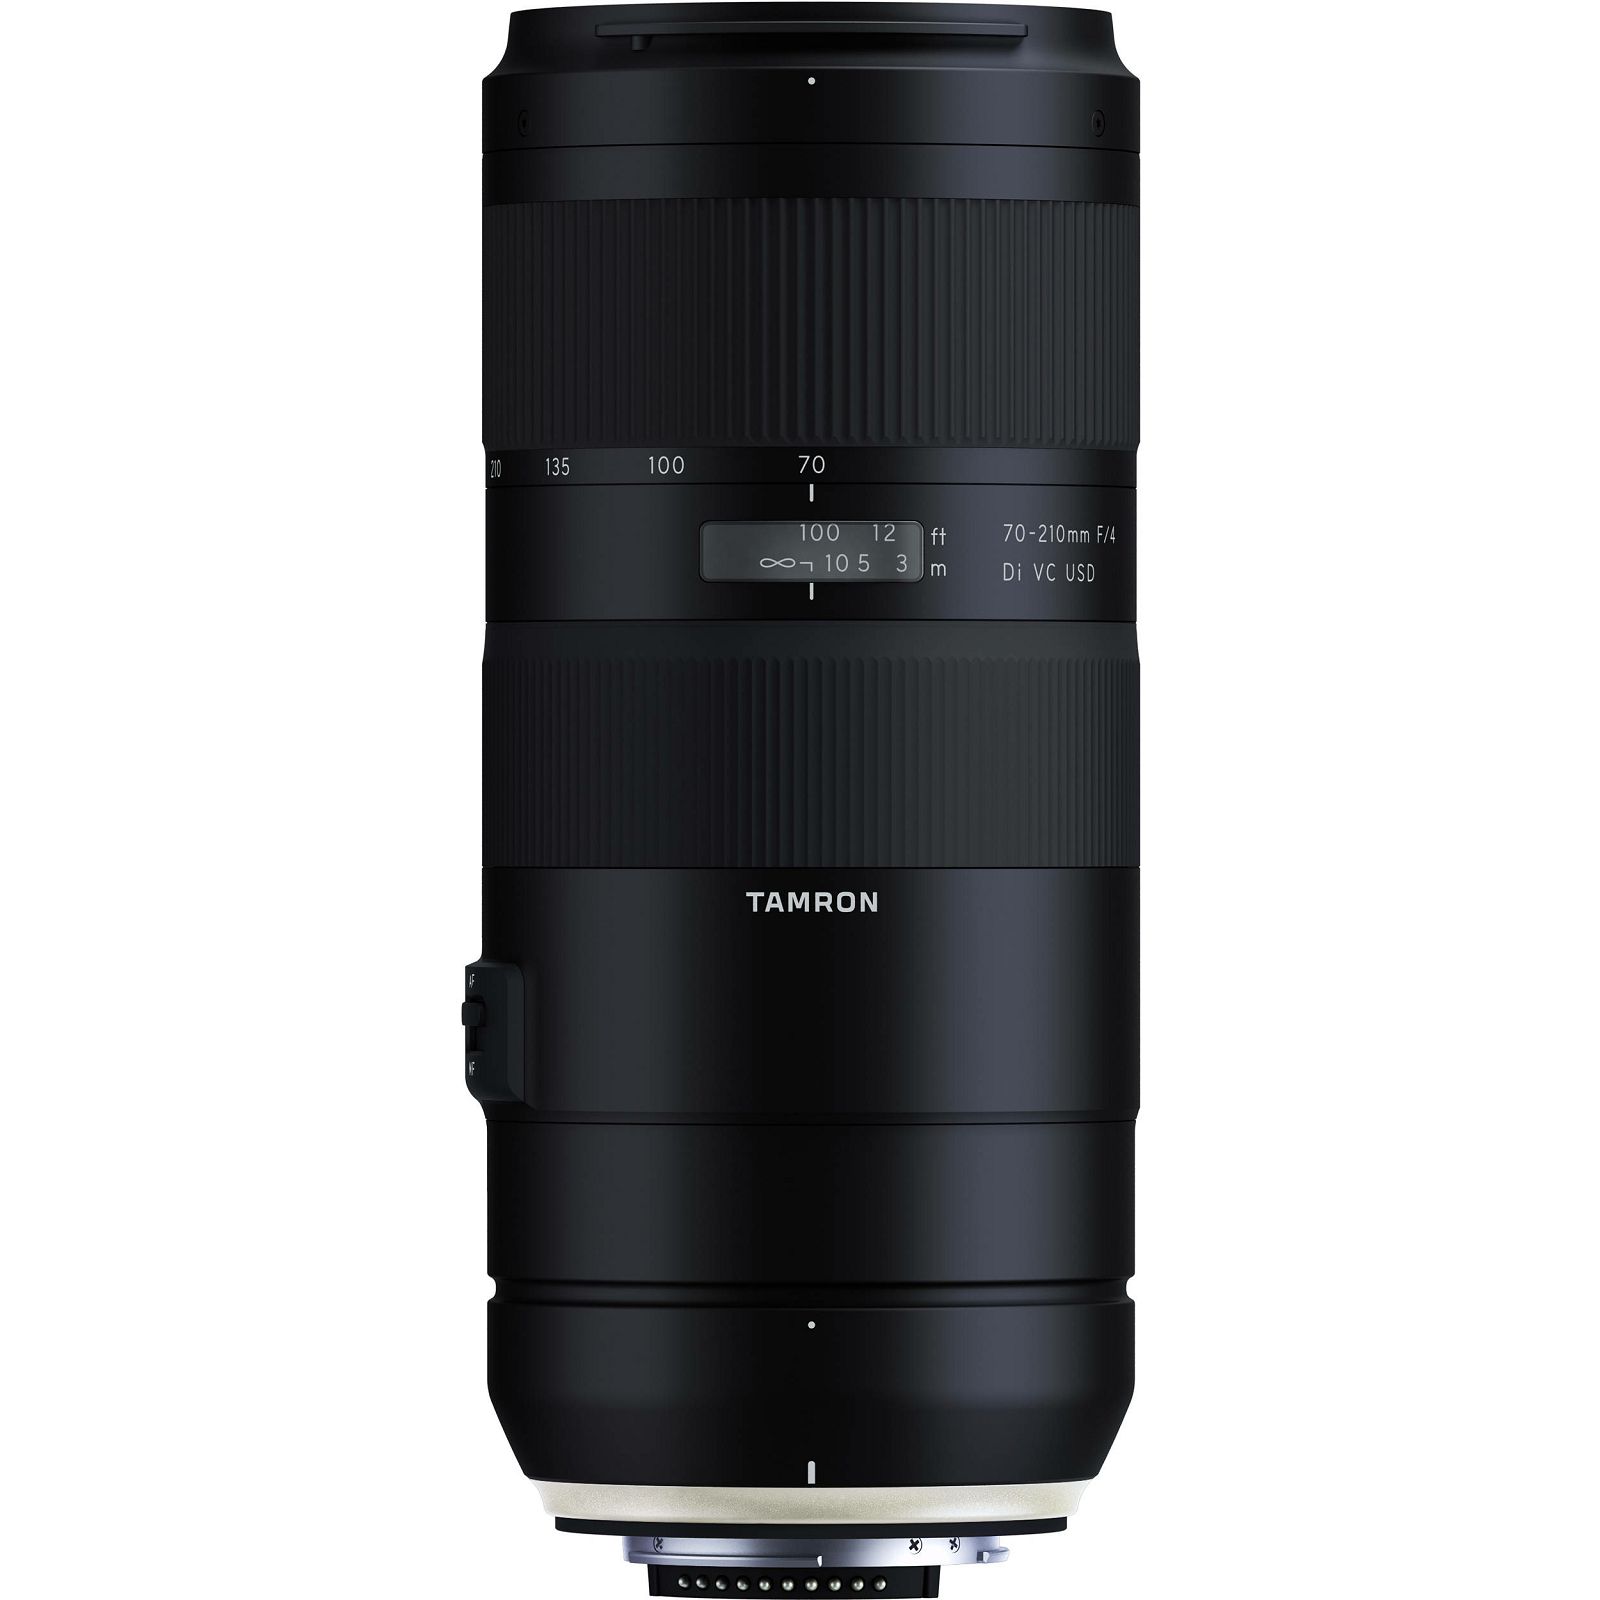 Tamron 70-210mm f/4 Di VC USD telefoto objektiv za Nikon FX (A034N)